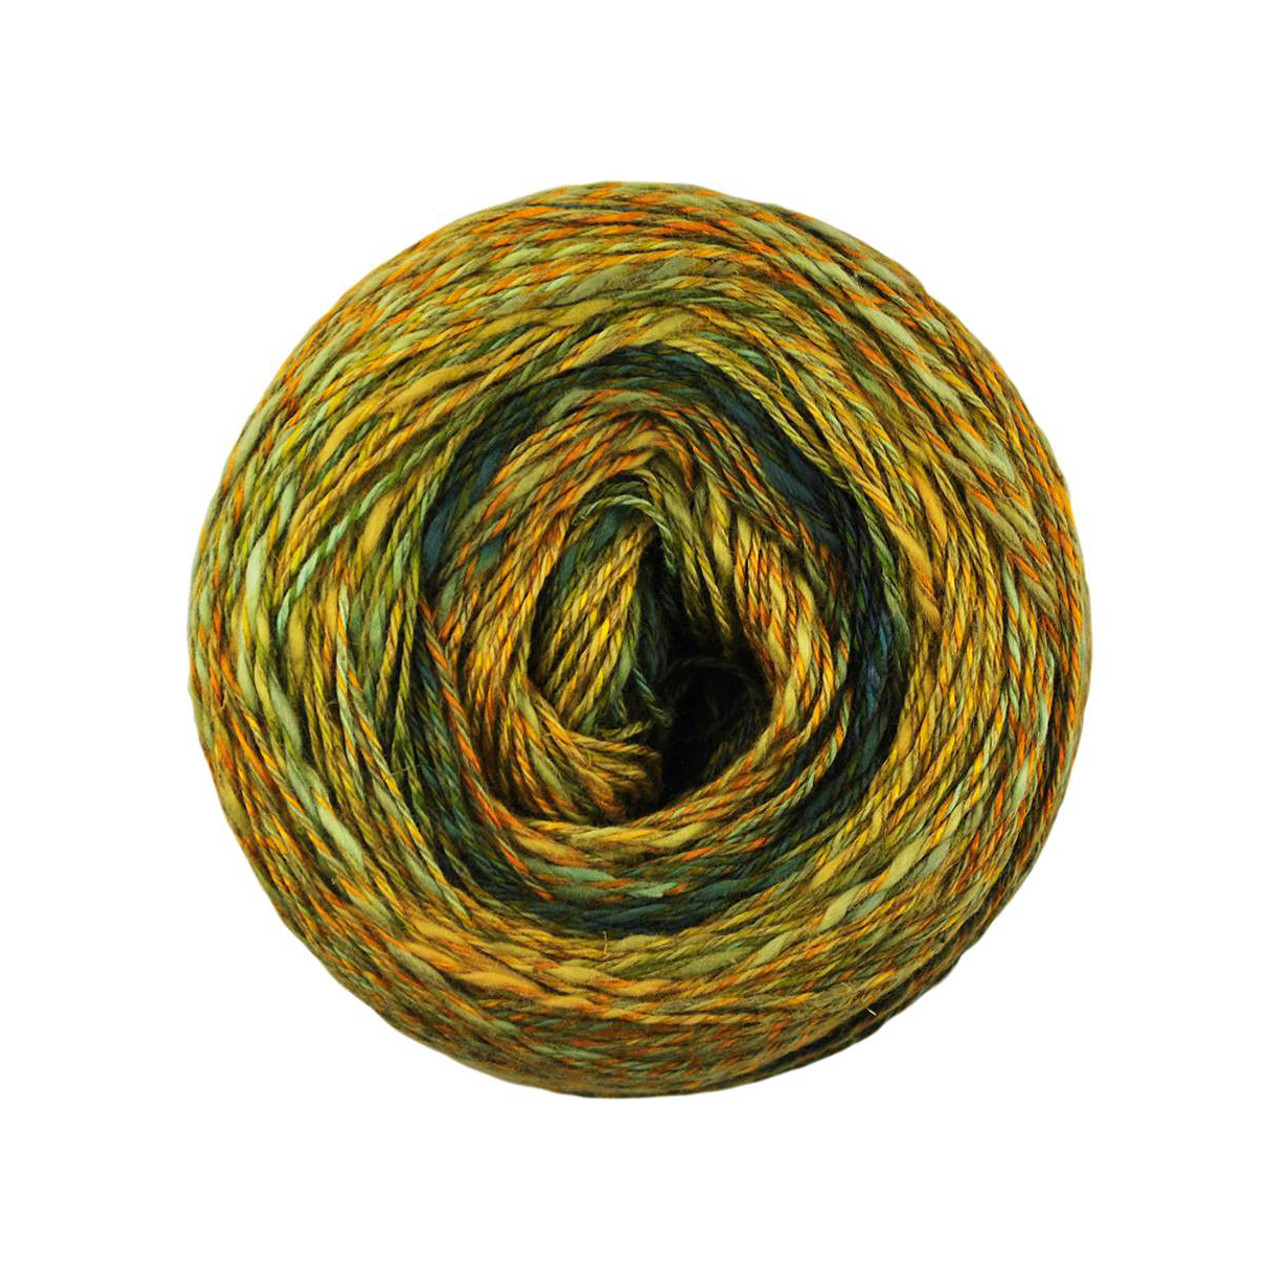 Gold metallic yarn - cotton yarn with gold metallic wrap - thin gage